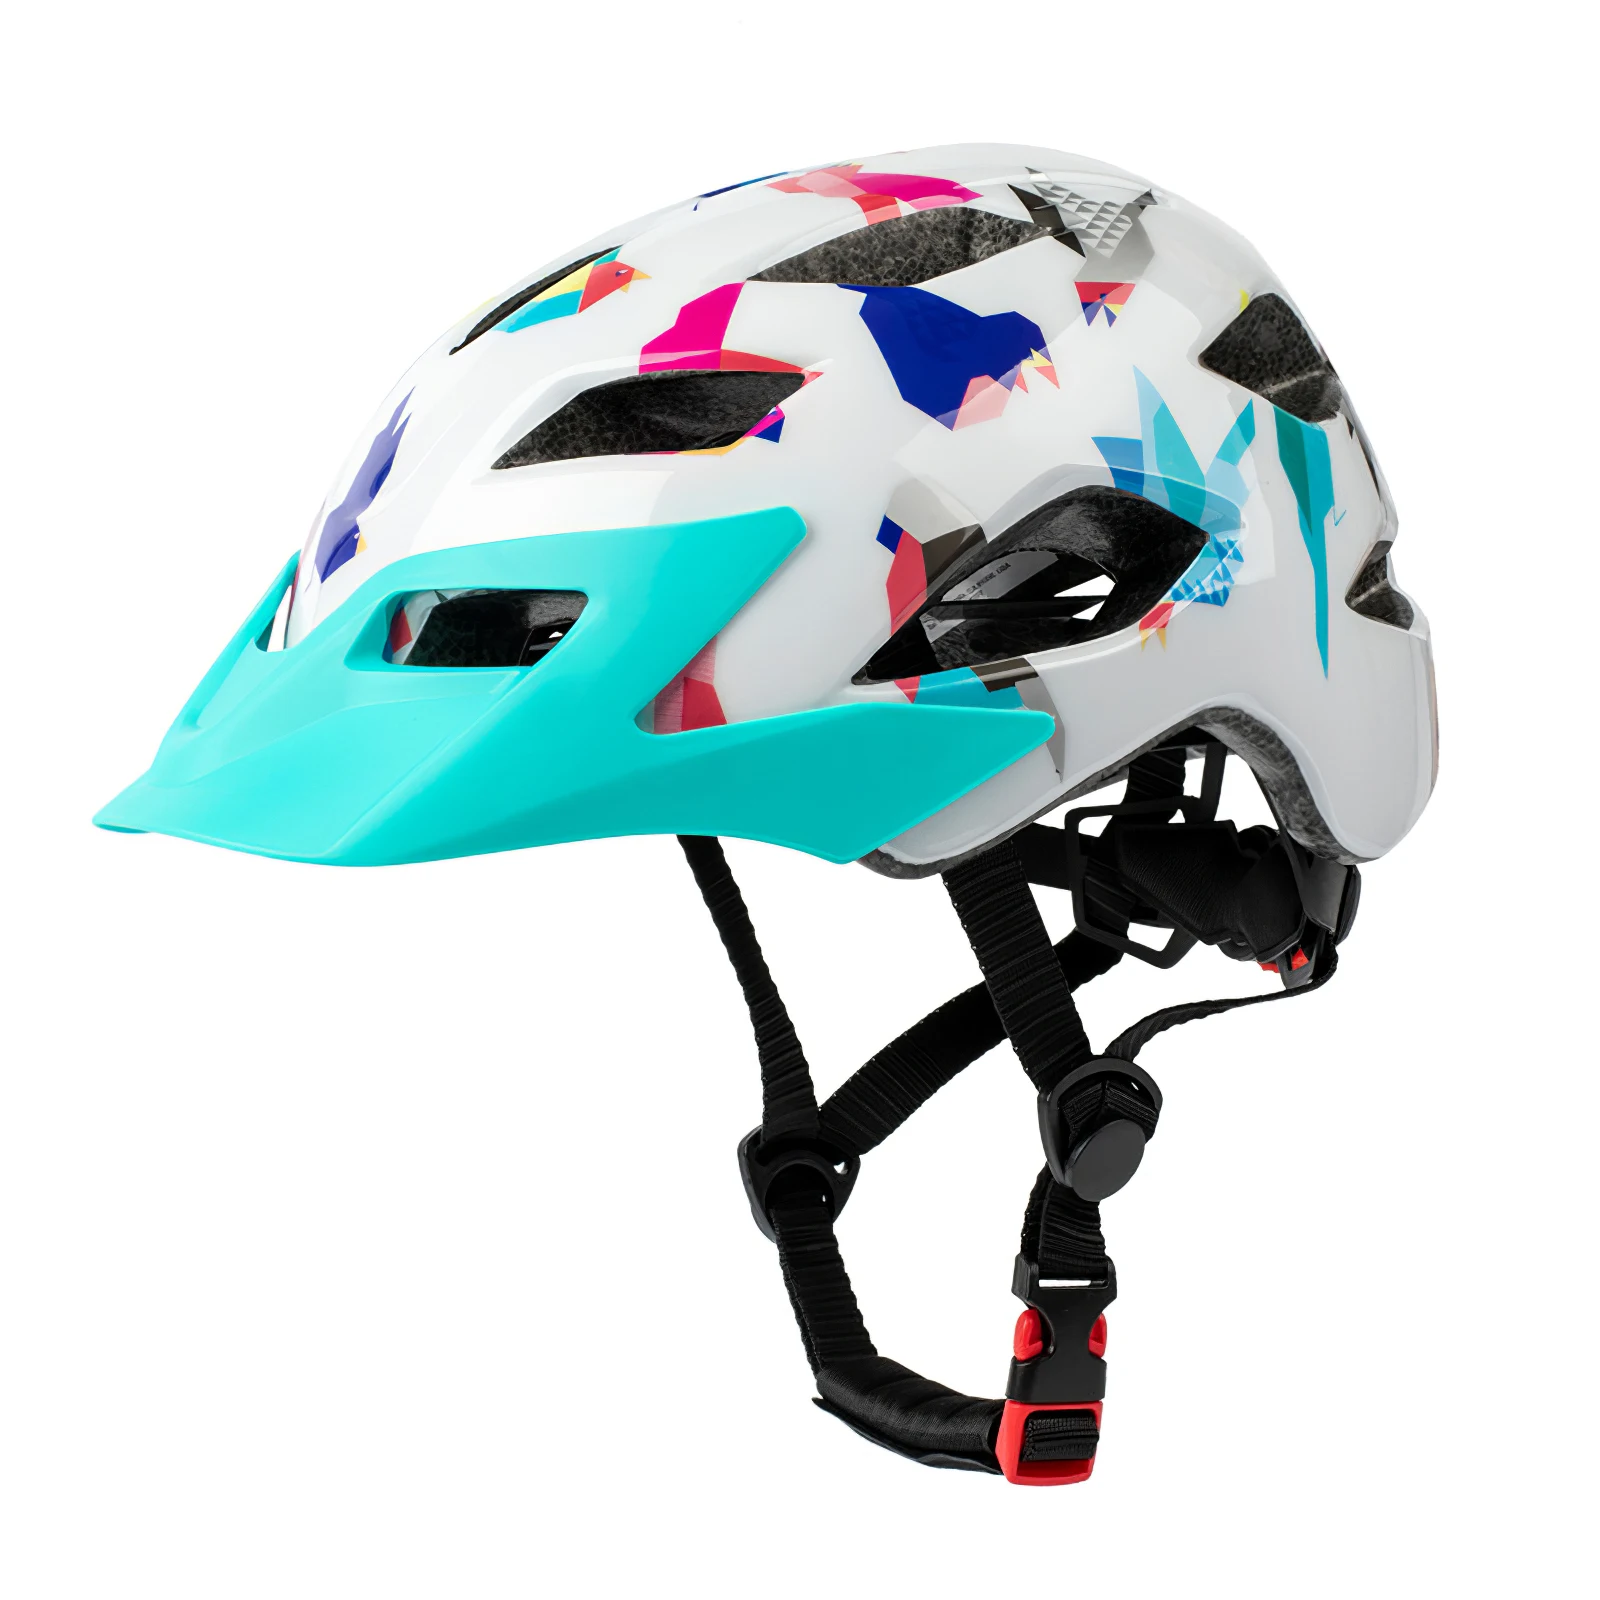 

Детский велосипедный шлем с задним фонарем, Детский защитный шлем для катания на коньках и езды на велосипеде, защитный шлем для детей